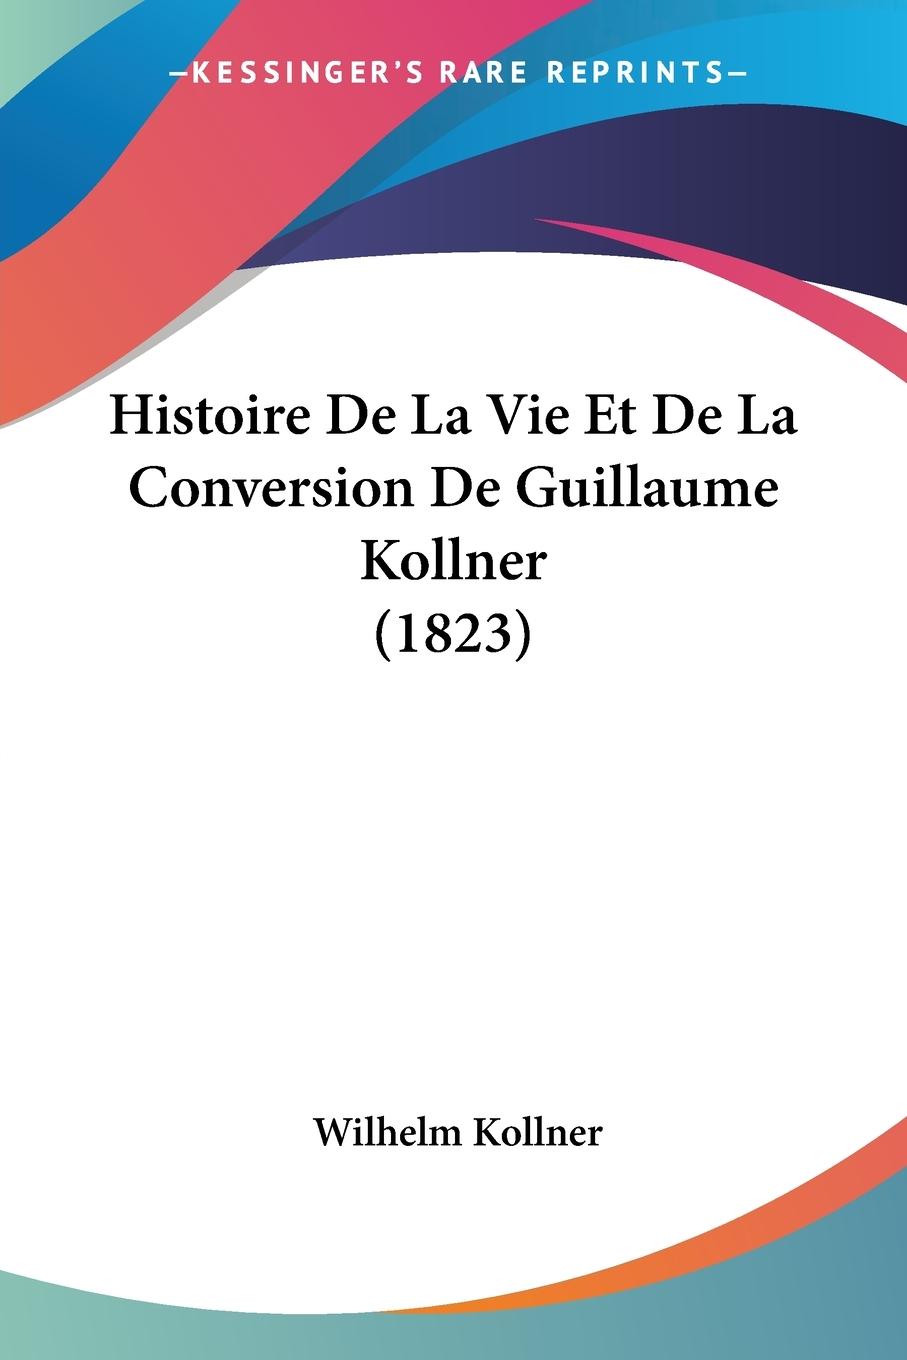 Histoire De La Vie Et De La Conversion De Guillaume Kollner (1823) - Kollner, Wilhelm